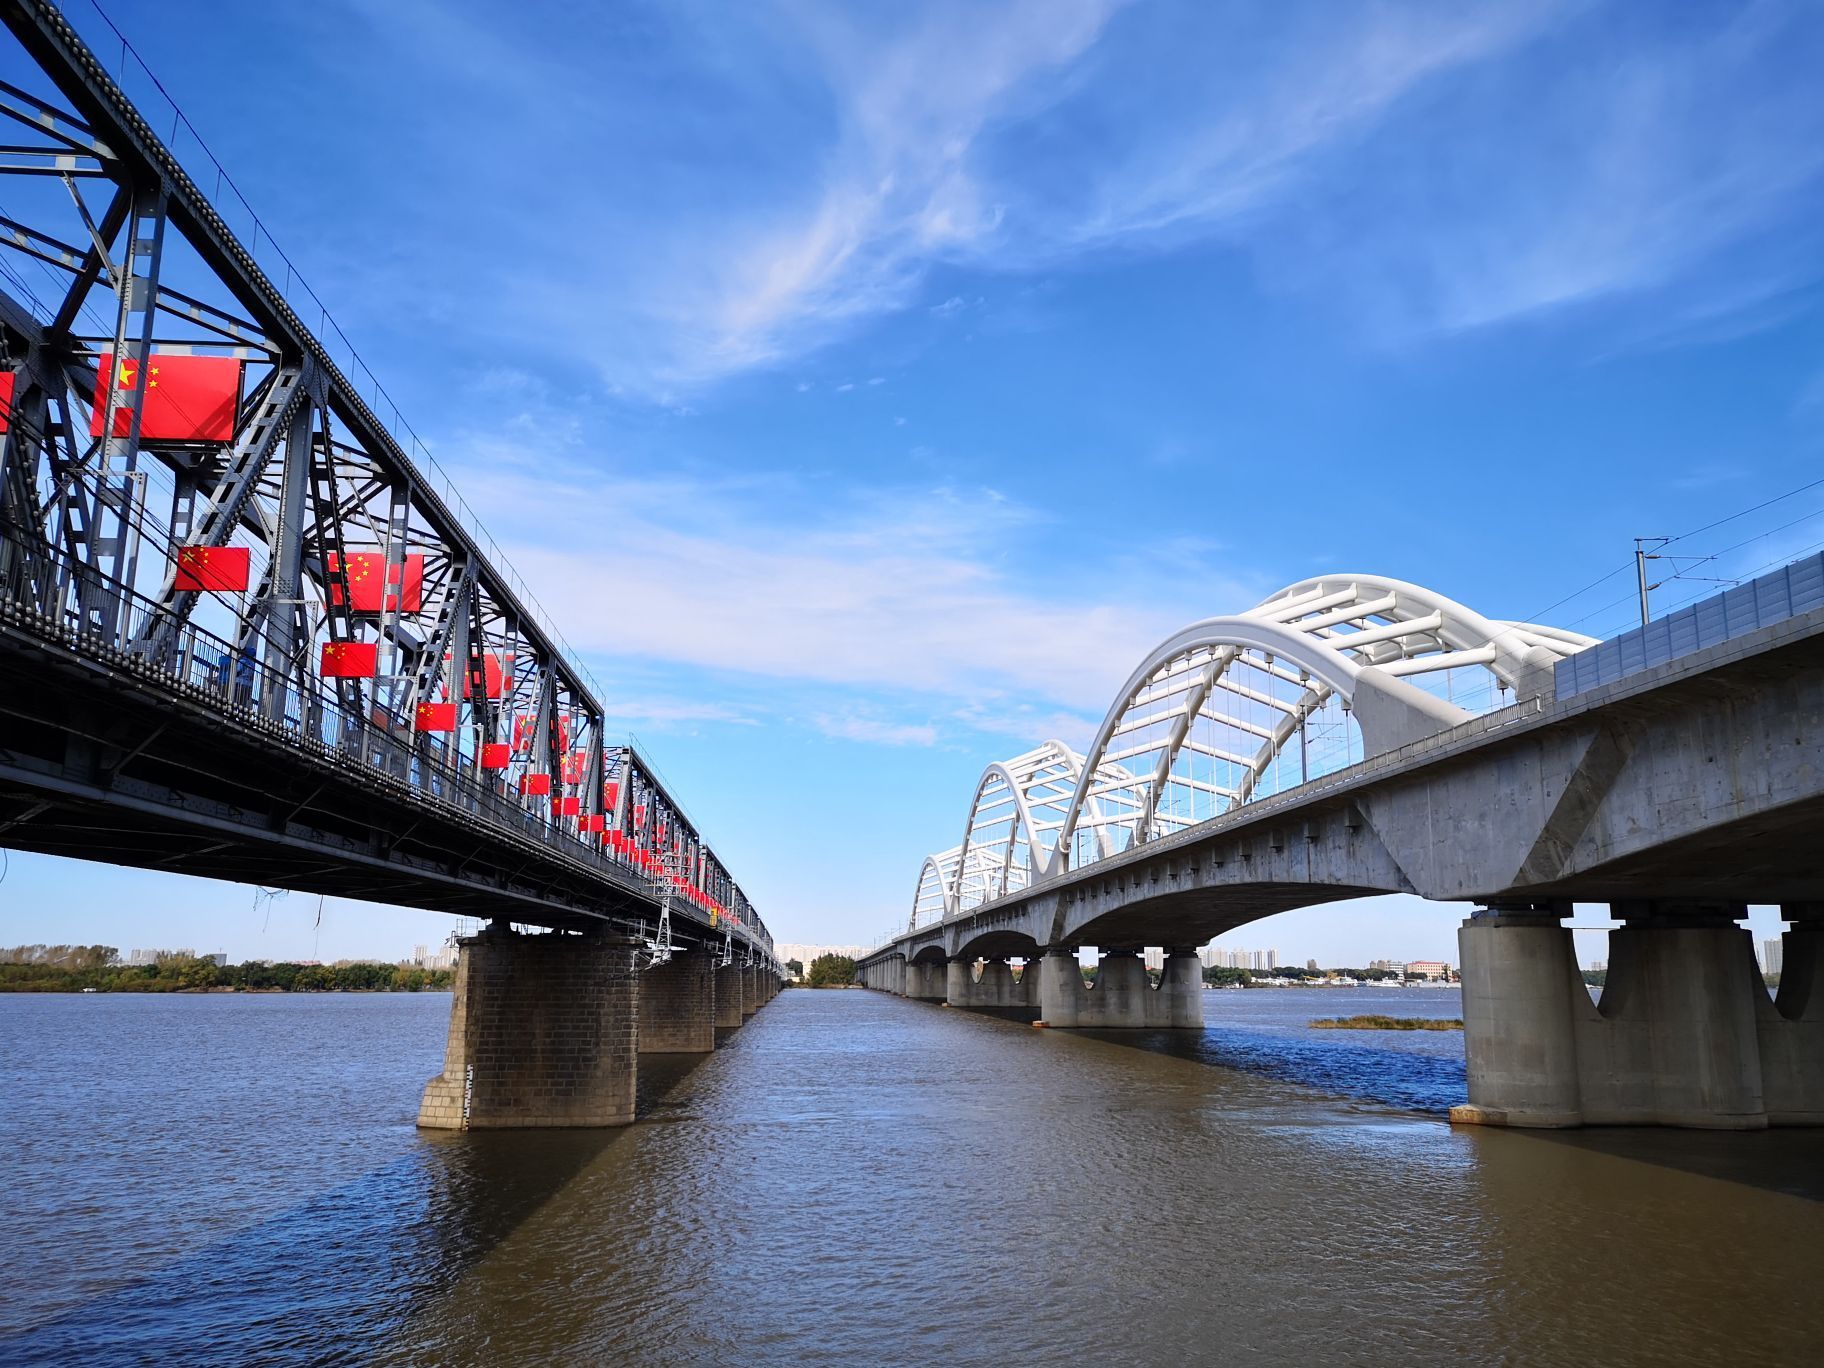 条玻璃栈道吸引了来自全国各地的游客前来观光铁路桥已成为哈尔滨一景